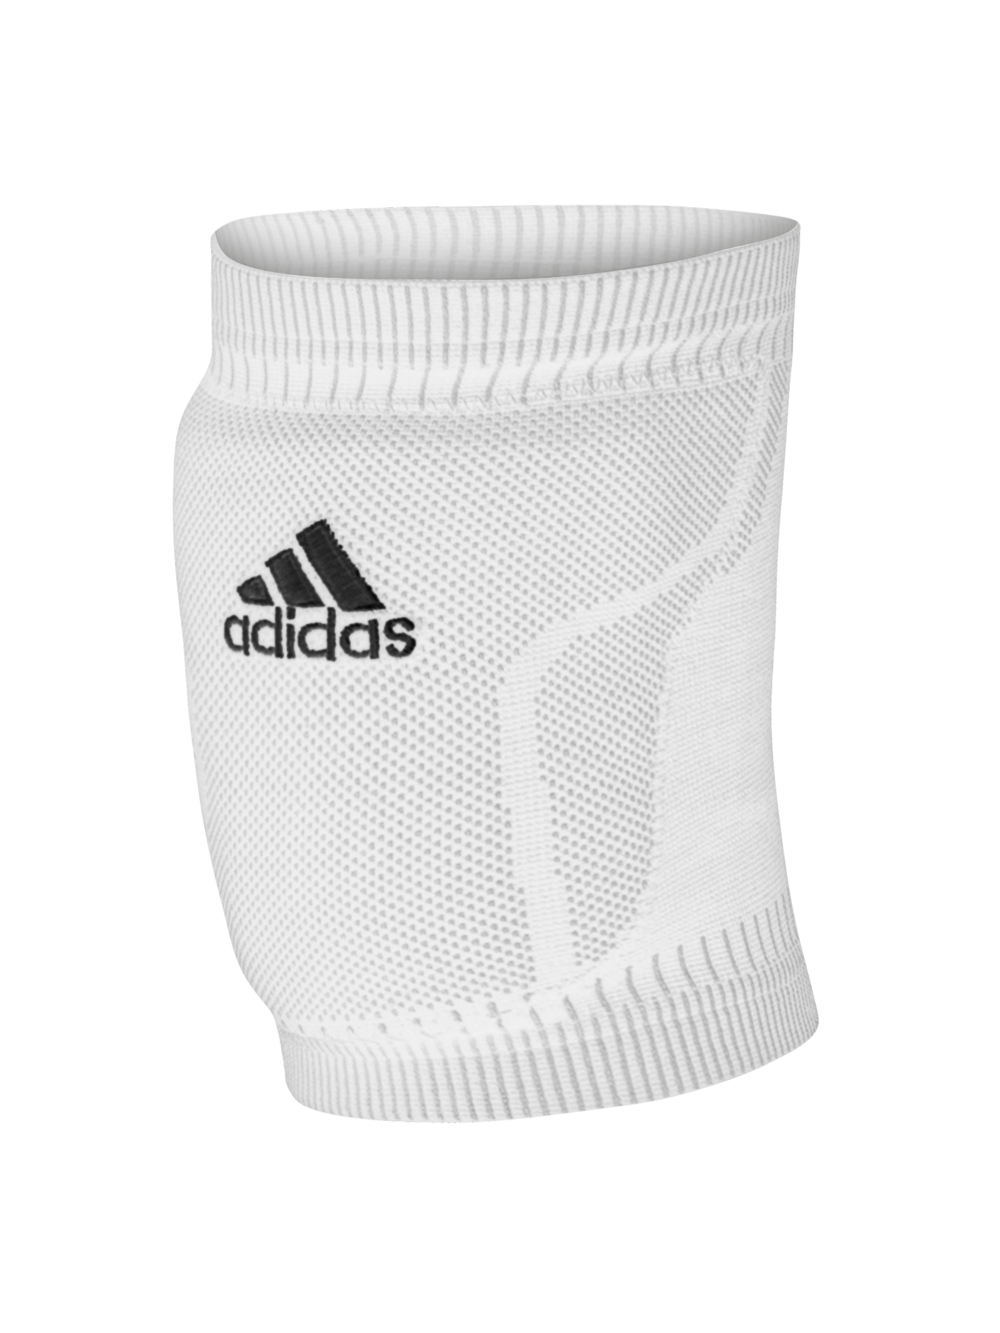 white adidas knee pads